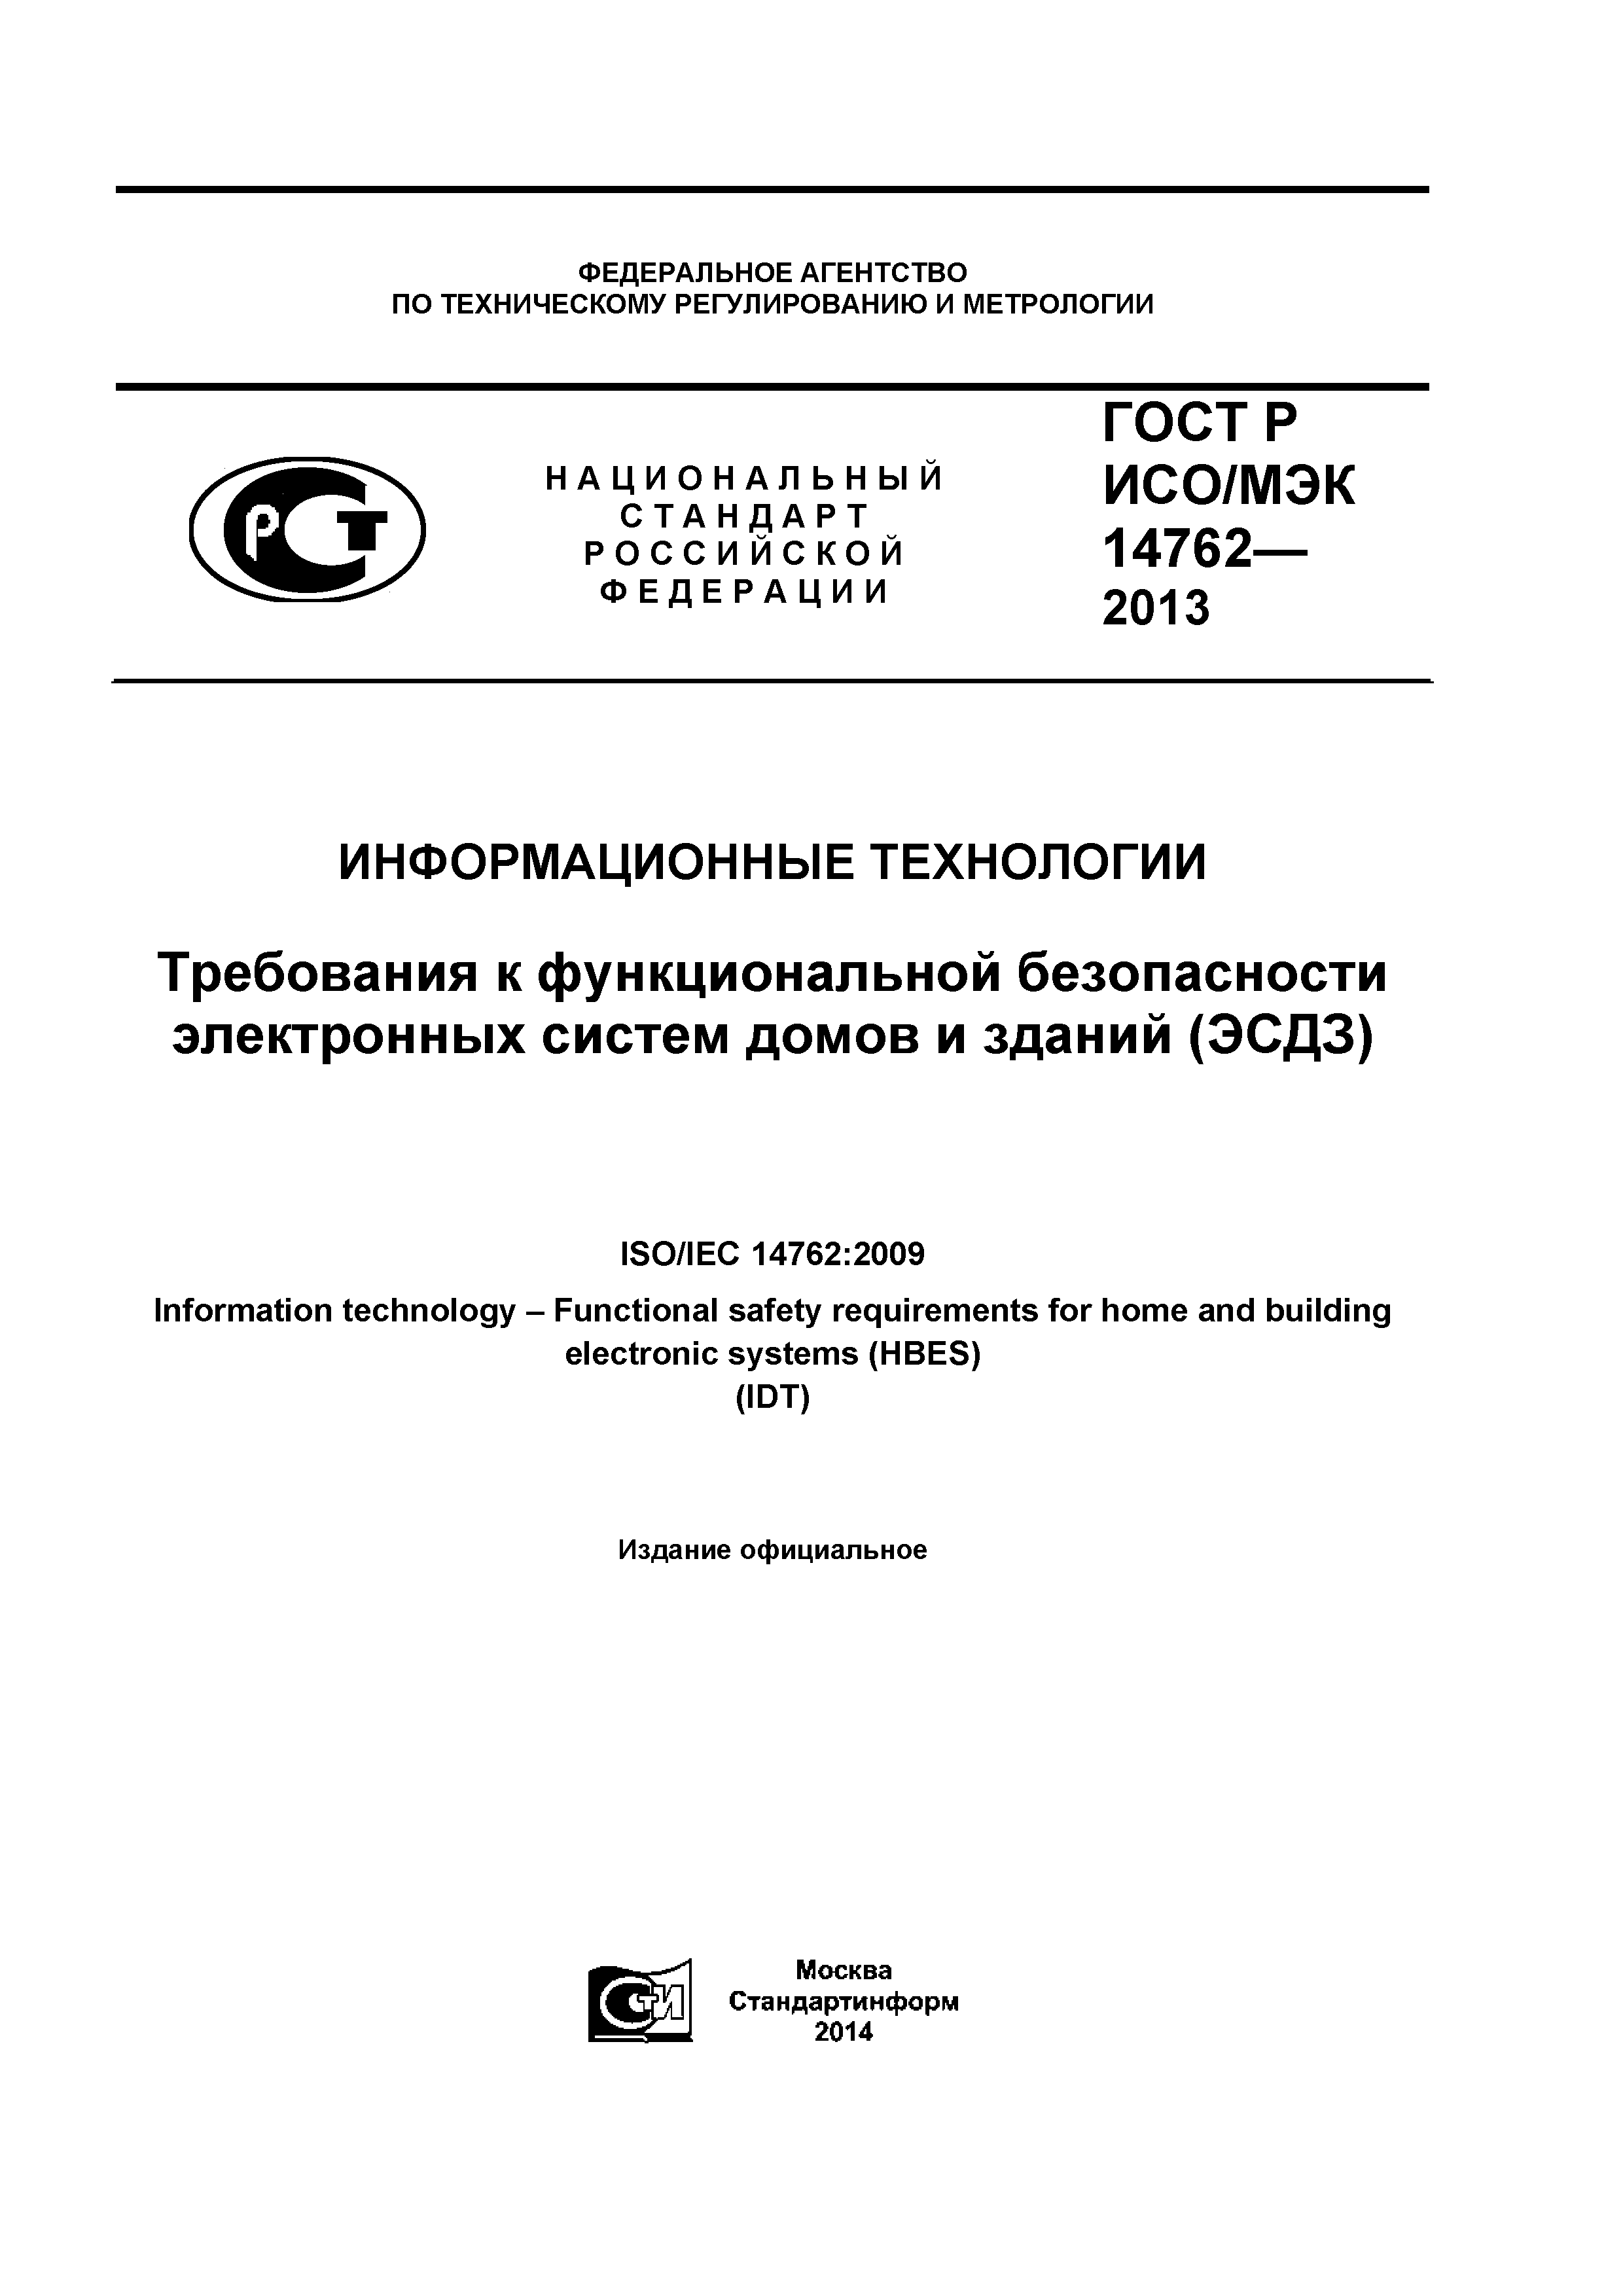 ГОСТ Р ИСО/МЭК 14762-2013